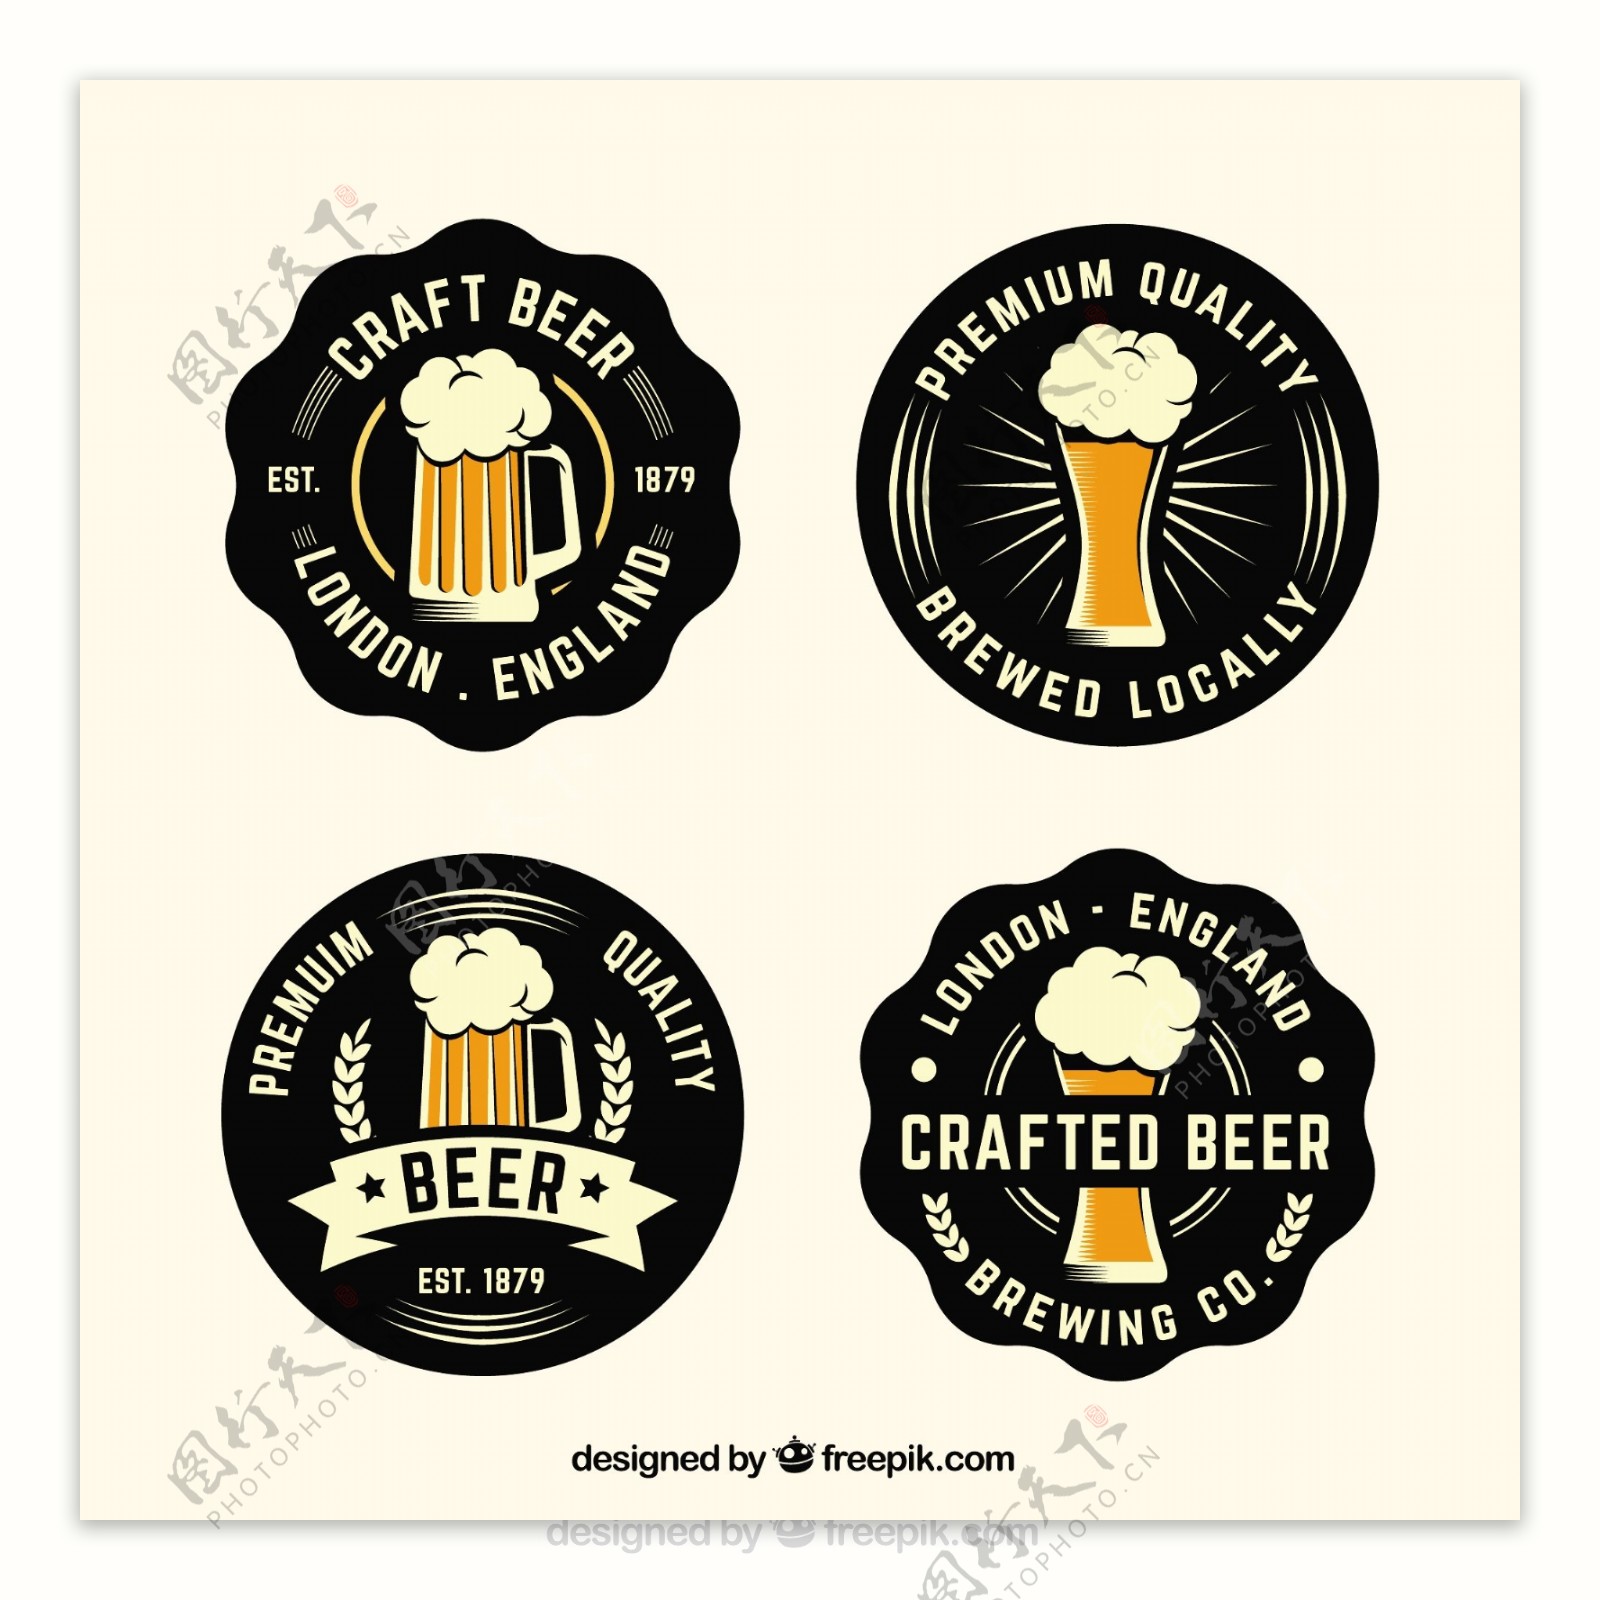 复古风格啤酒贴纸图标